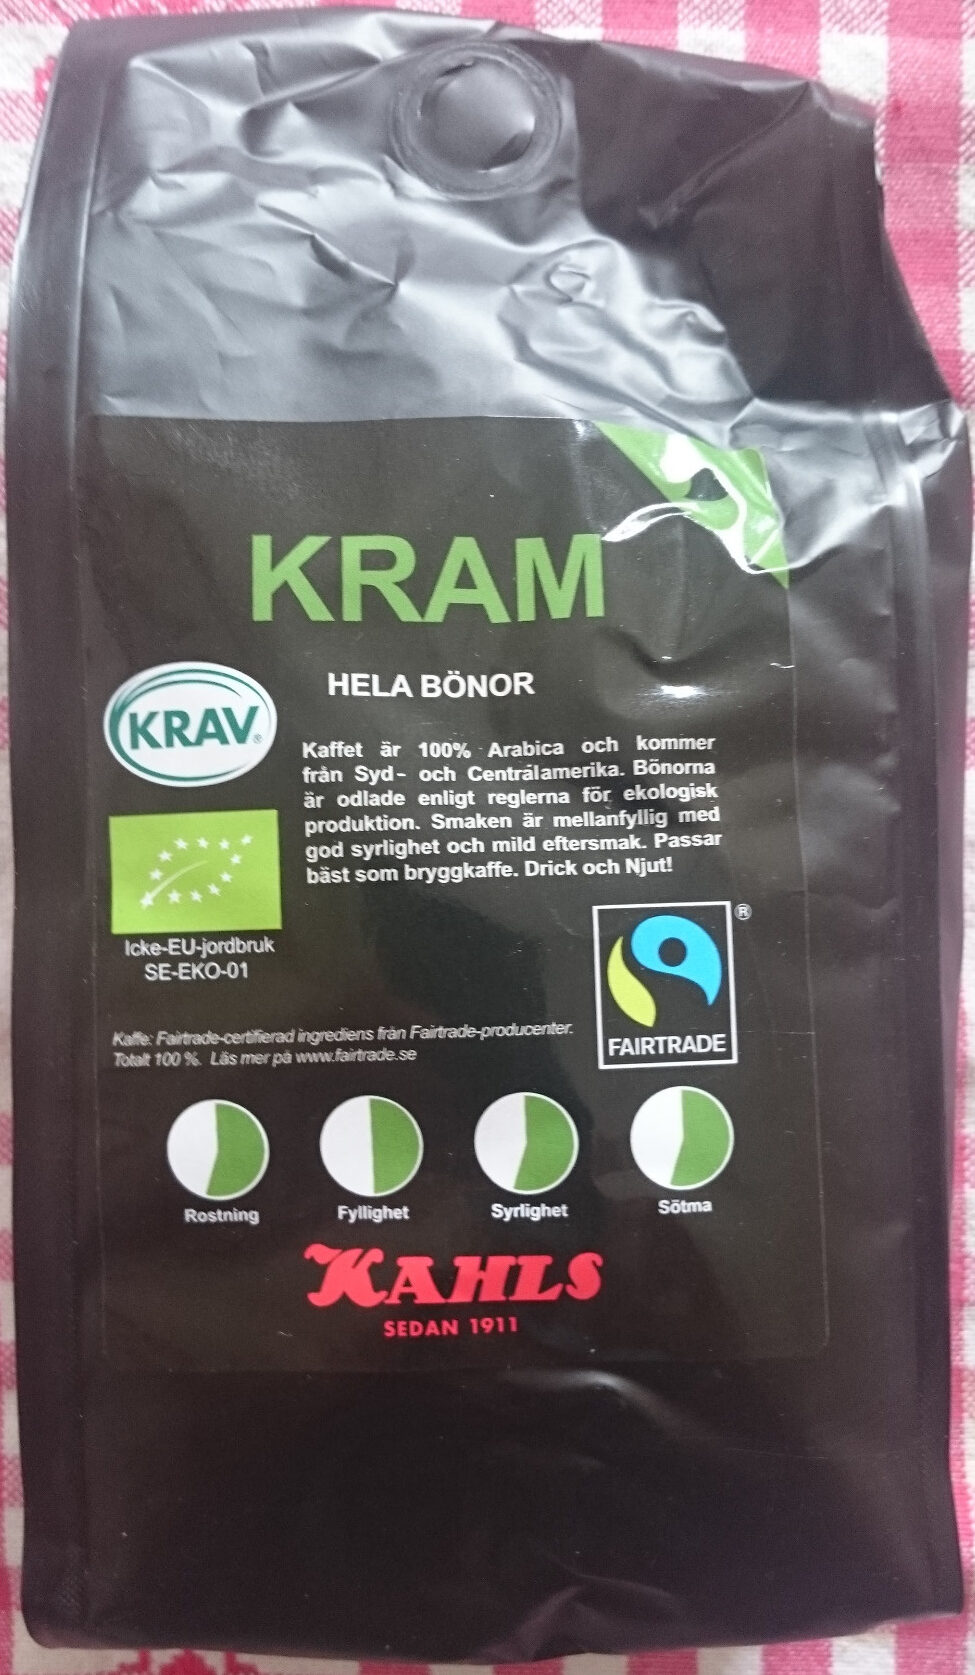 Kram Hela Bönor Kaffe - Produkt - sv